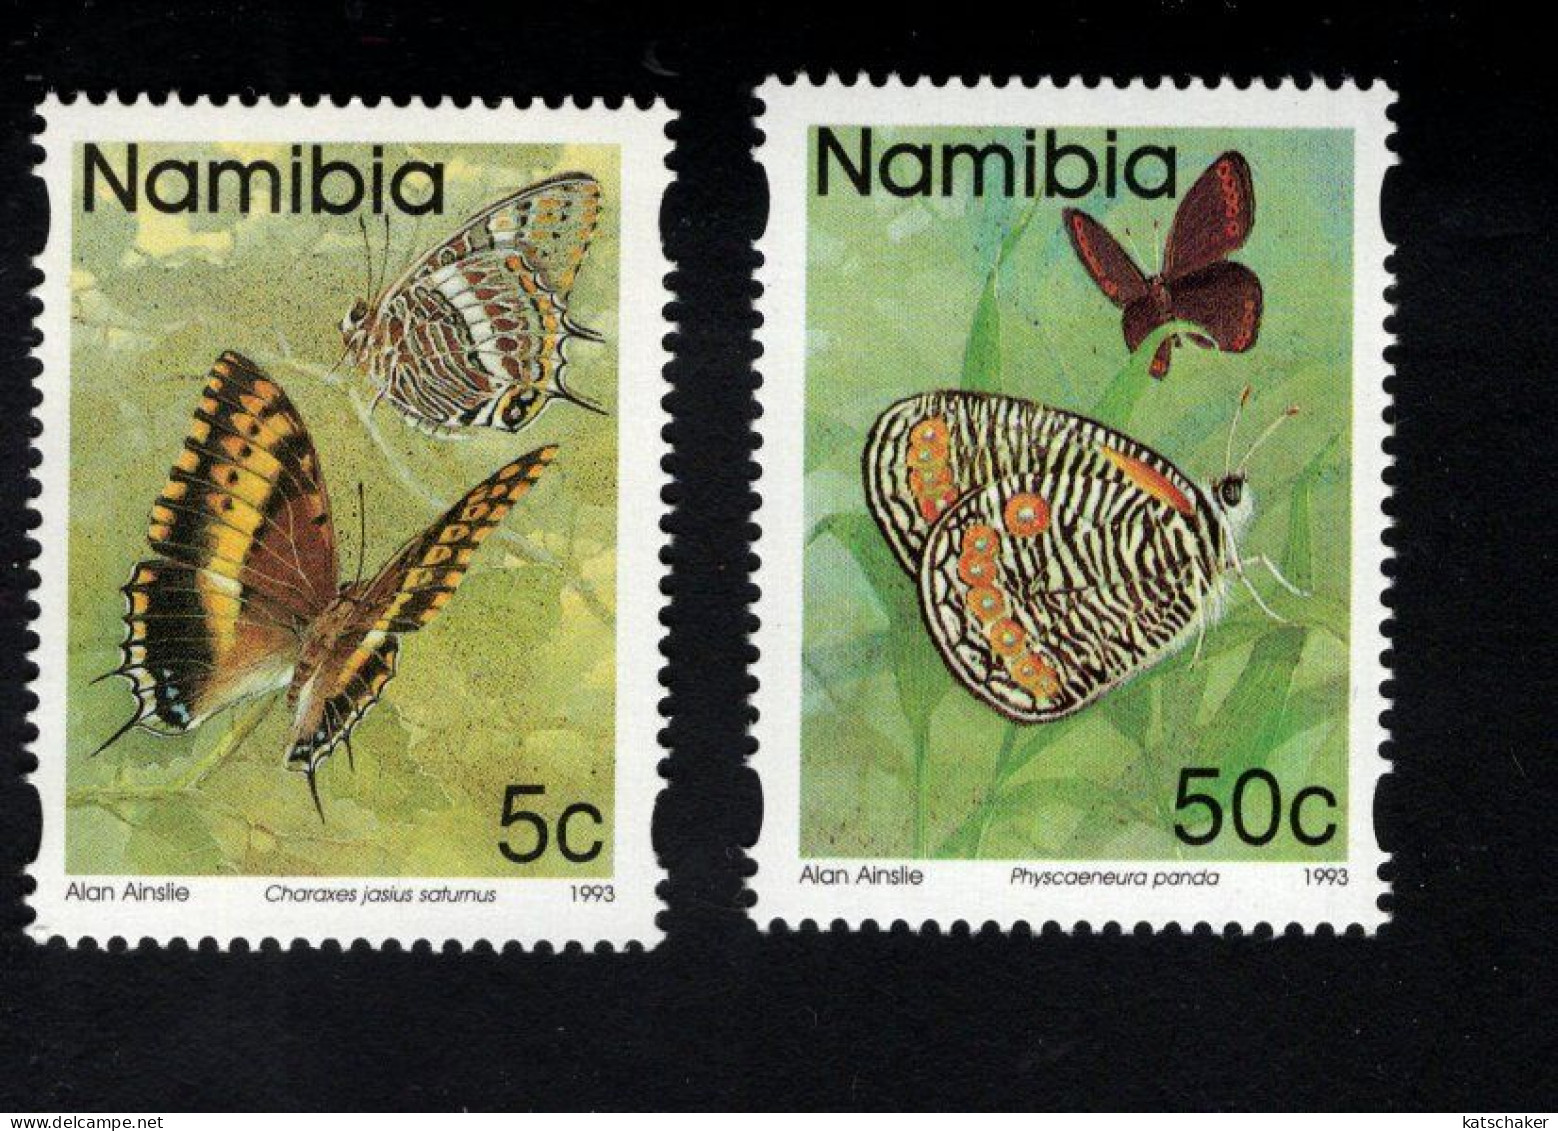 2025326555 1997 SCOTT 742A & 747A (XX) POSTFRIS MINT NEVER HINGED - BUTTERFLIES - FAUNA - Namibie (1990- ...)